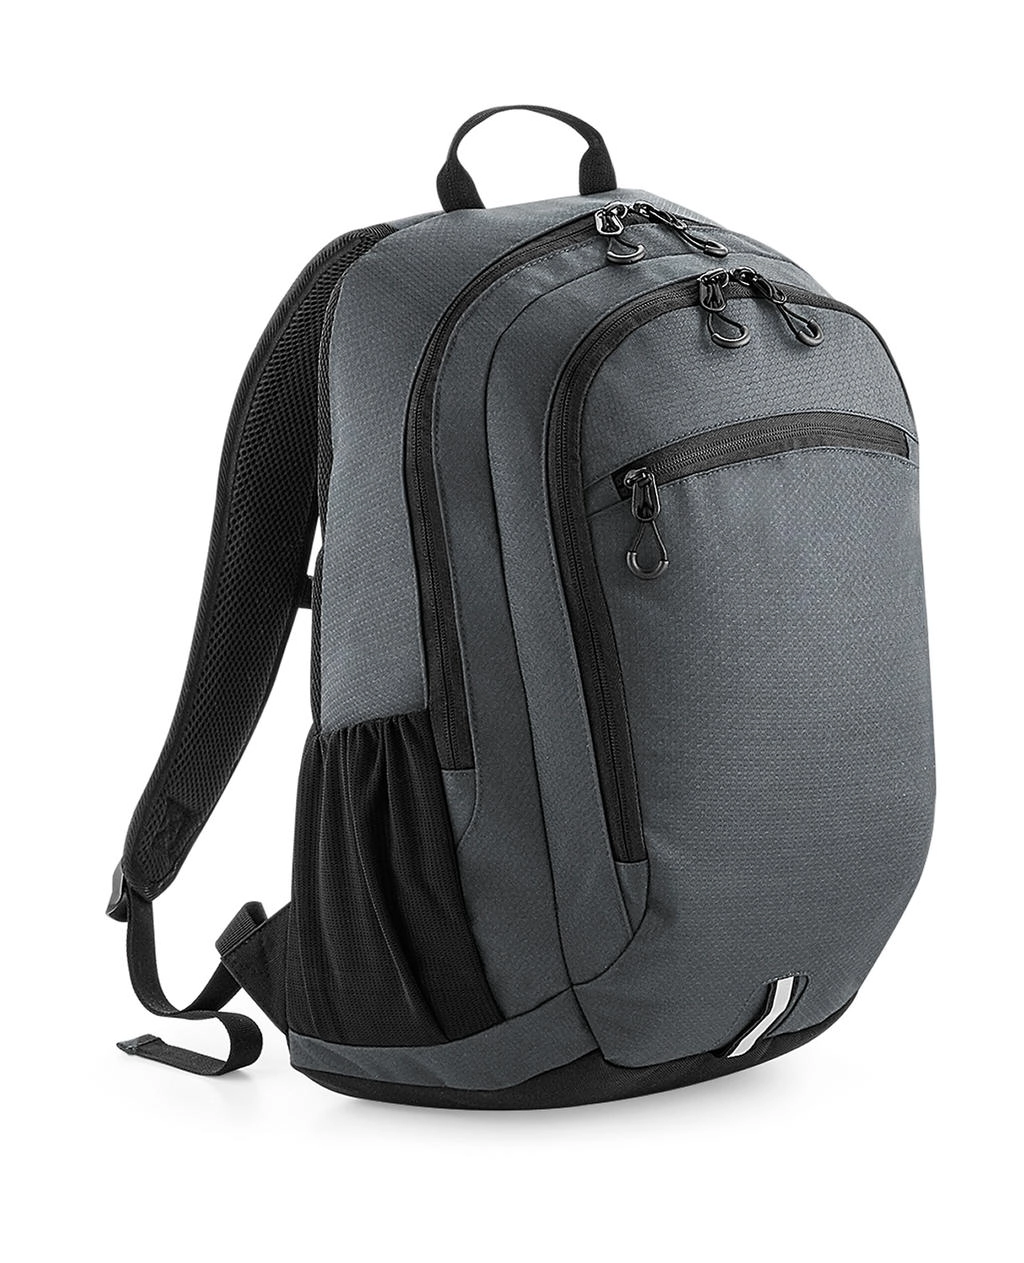 Endeavour Backpack zum Besticken und Bedrucken in der Farbe Graphite Grey mit Ihren Logo, Schriftzug oder Motiv.